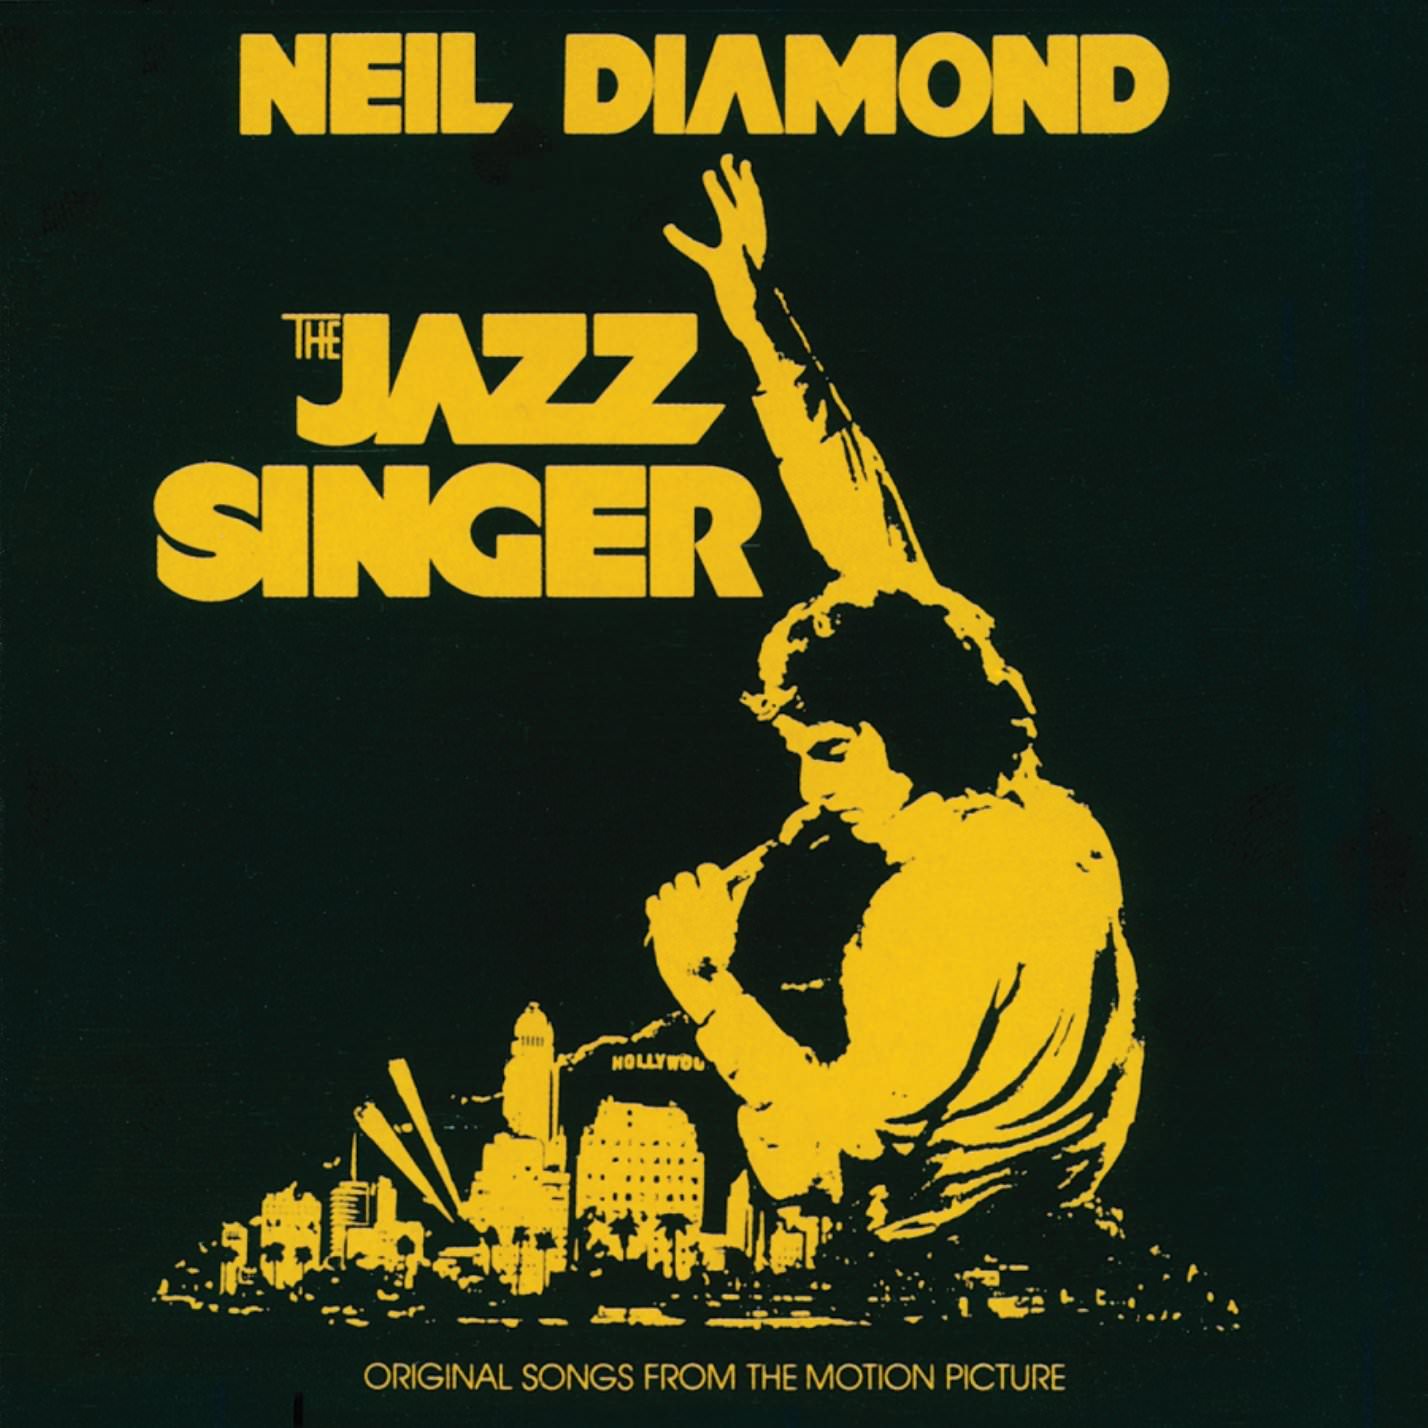 Neil Diamond - The Jazz Singer (1980/2016) [HDTracks FLAC 24bit/96kHz]